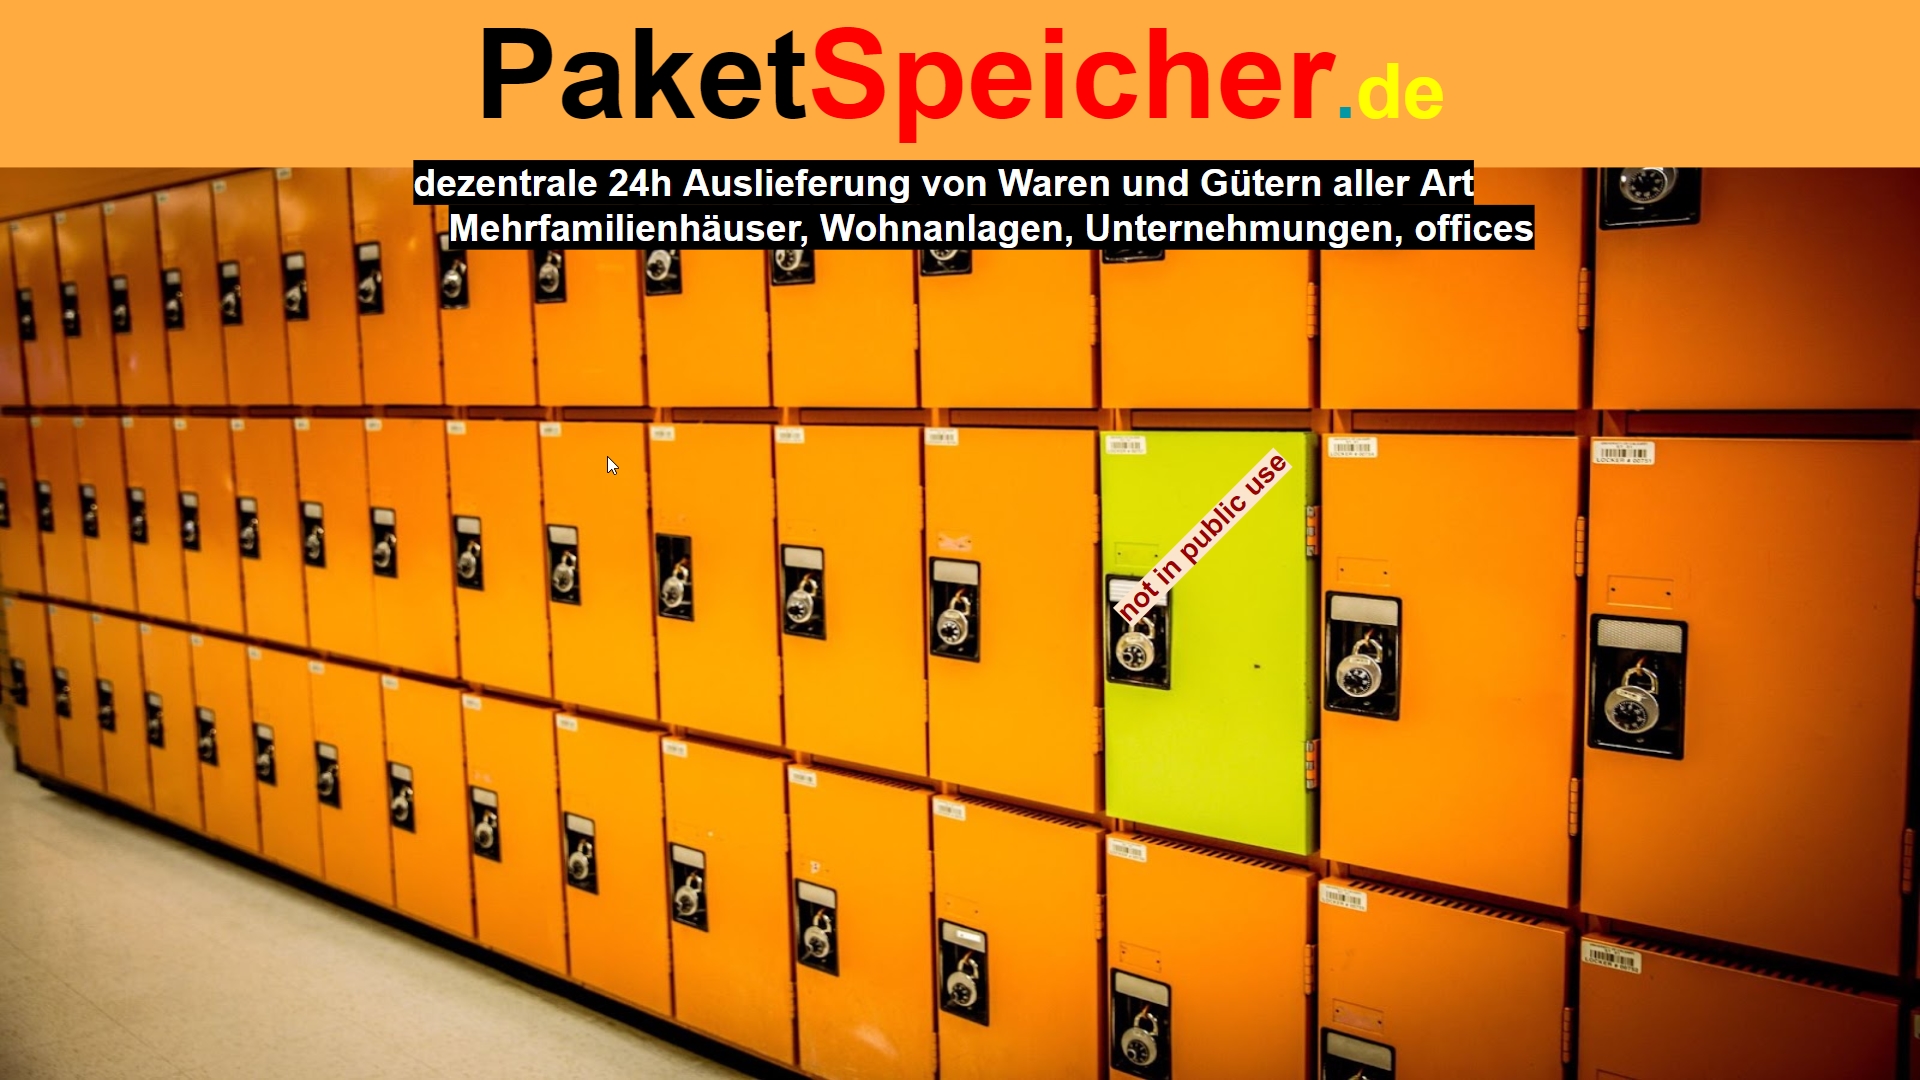 www.paketspeicher.de